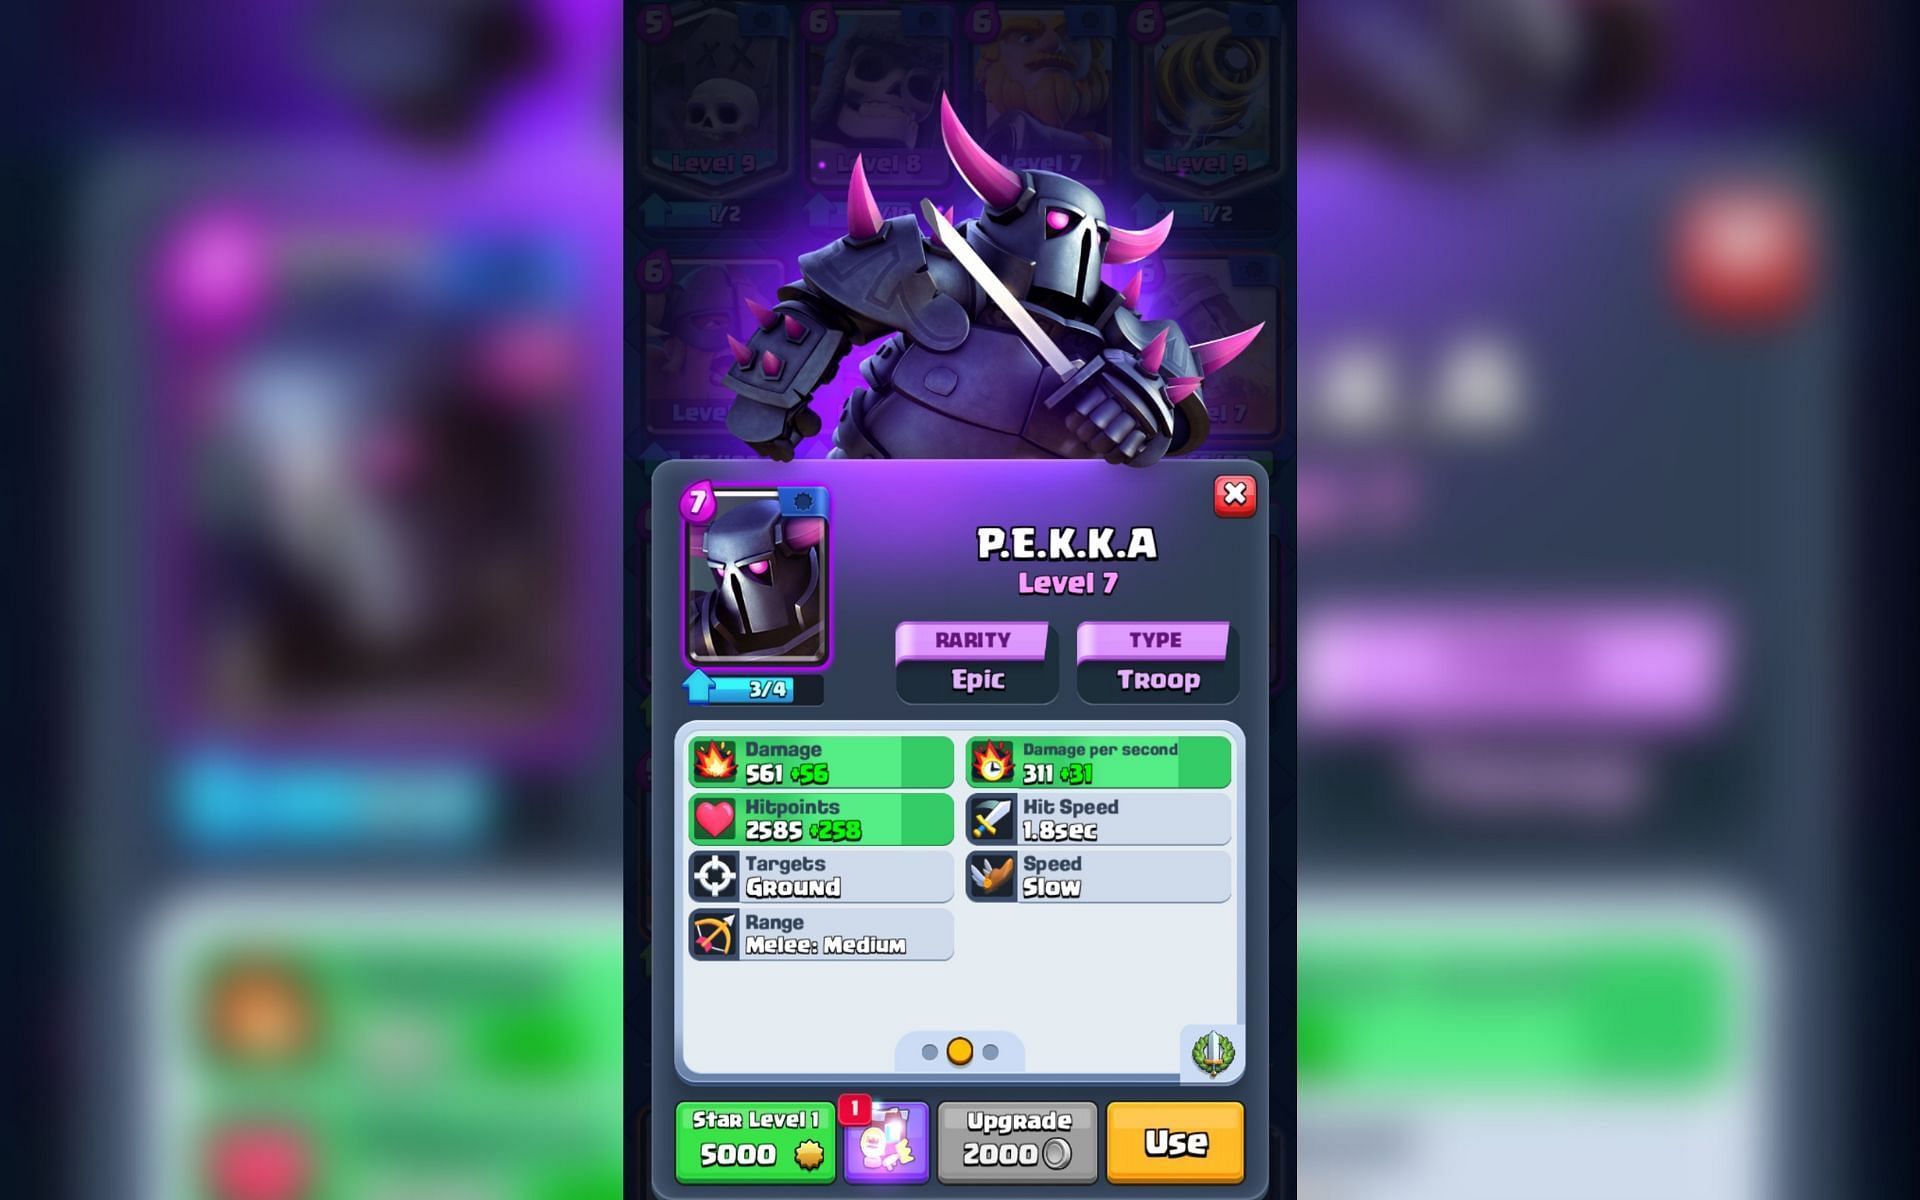 Pekka in Clash Royale (Image via Sportskeeda)